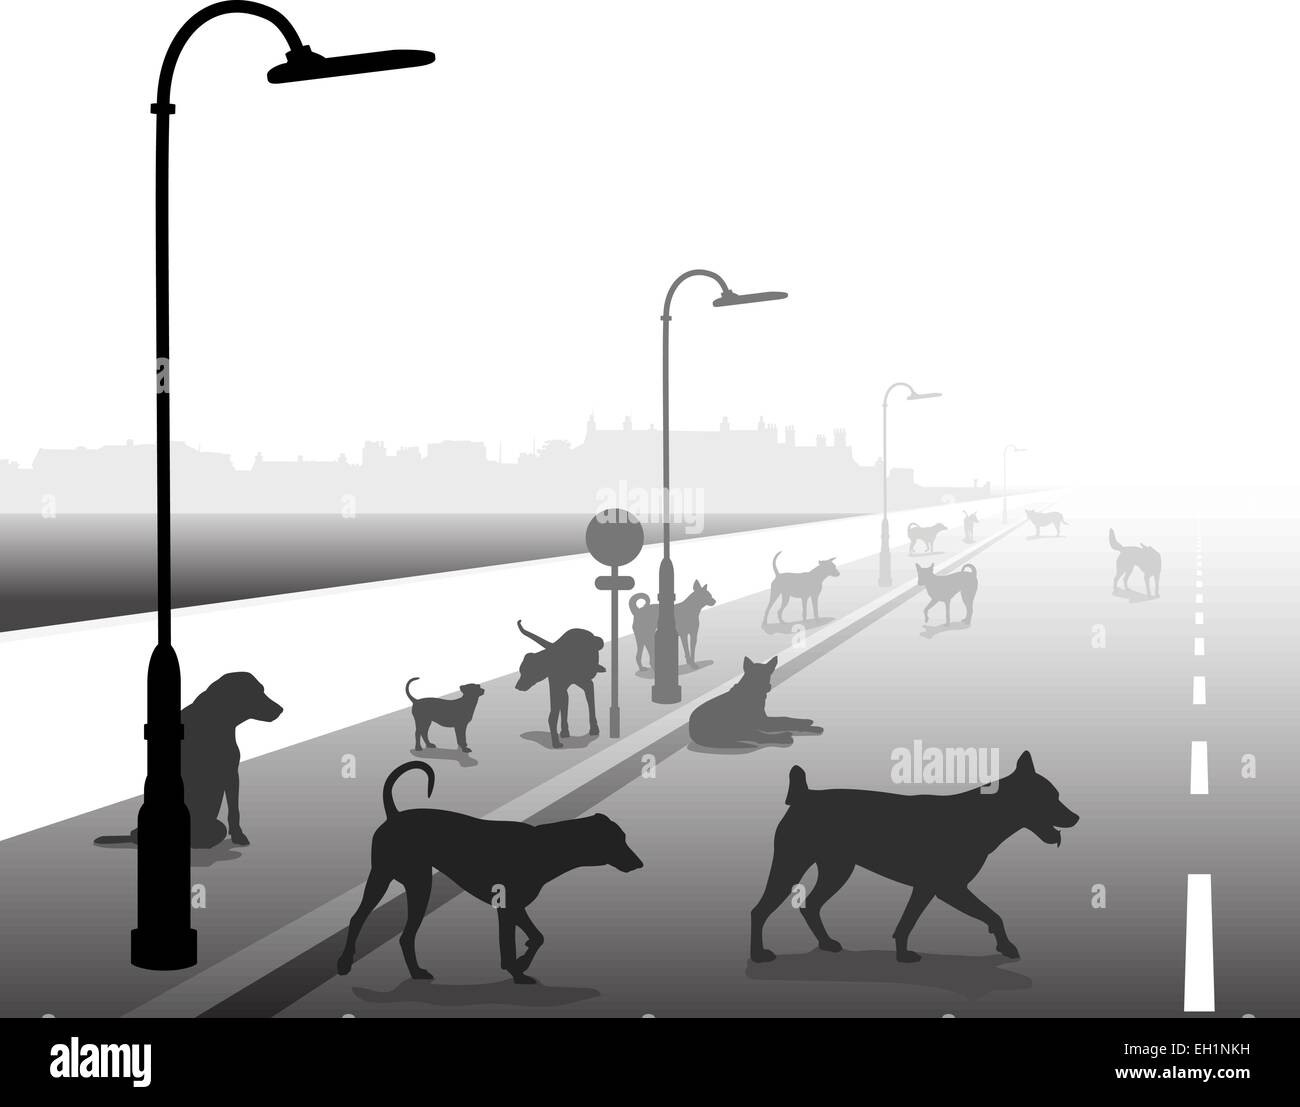 Illustration vectorielle modifiable d'un groupe disparate de chiens errants sur une route solitaire Illustration de Vecteur